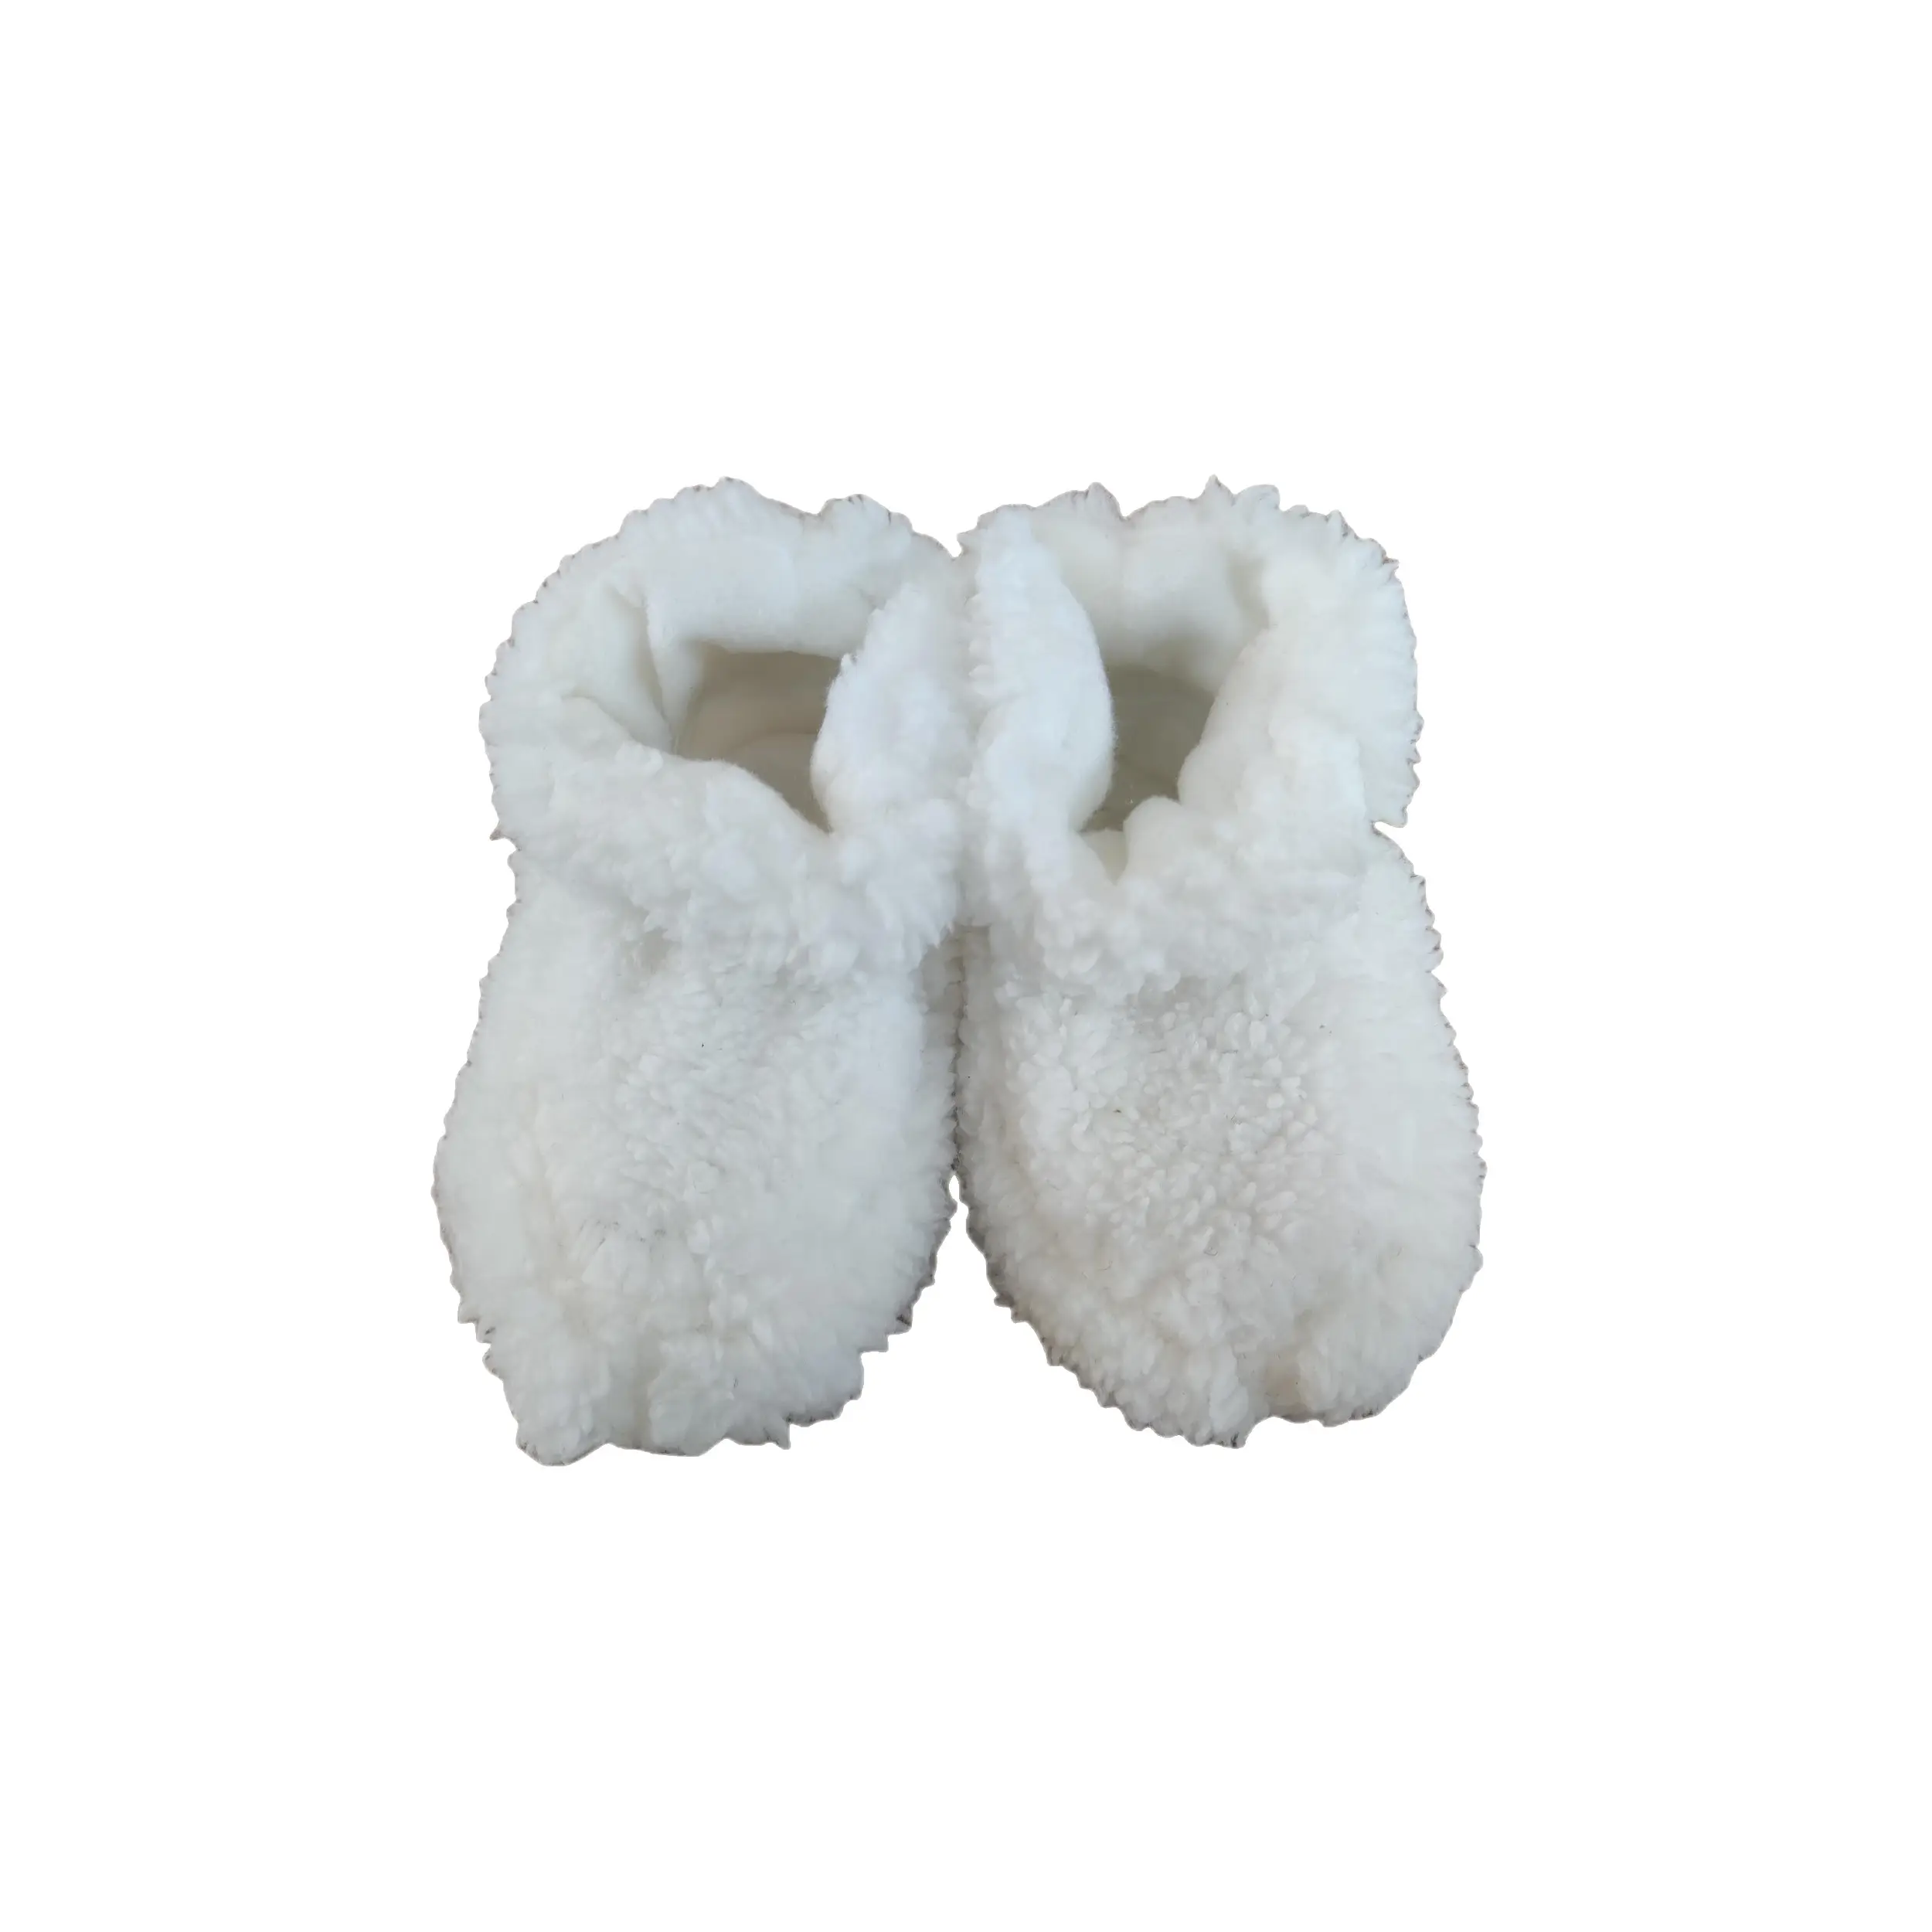 Zapatos de invierno ligeros para bebé, niño, blanco, felpa cálida, para interiores, recién nacido